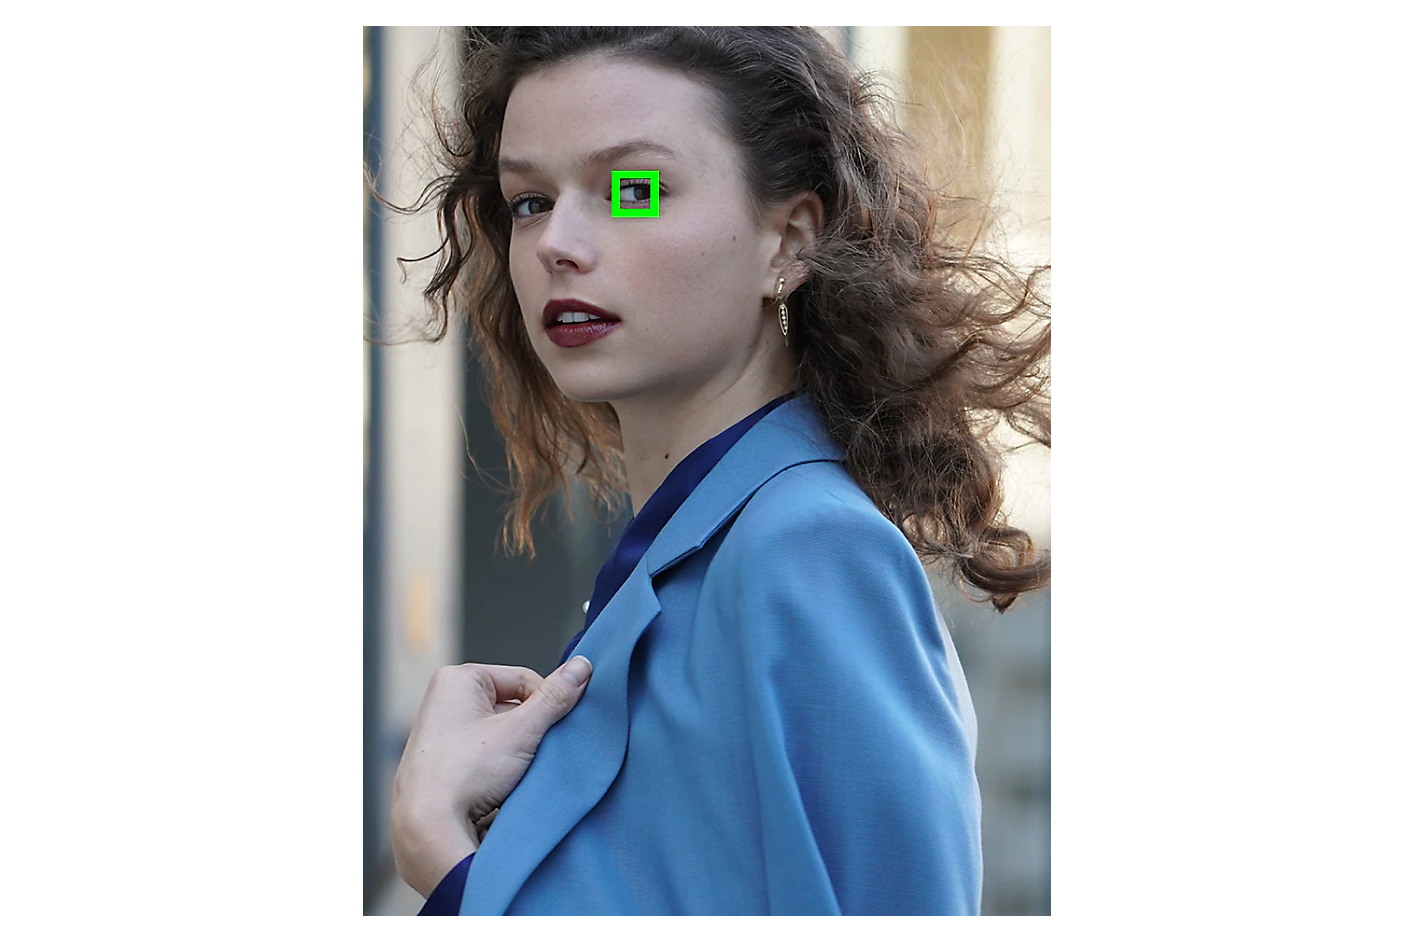 Žena u plavoj jakni gleda u stranu uz zeleni kvadrat oko jednog oka.